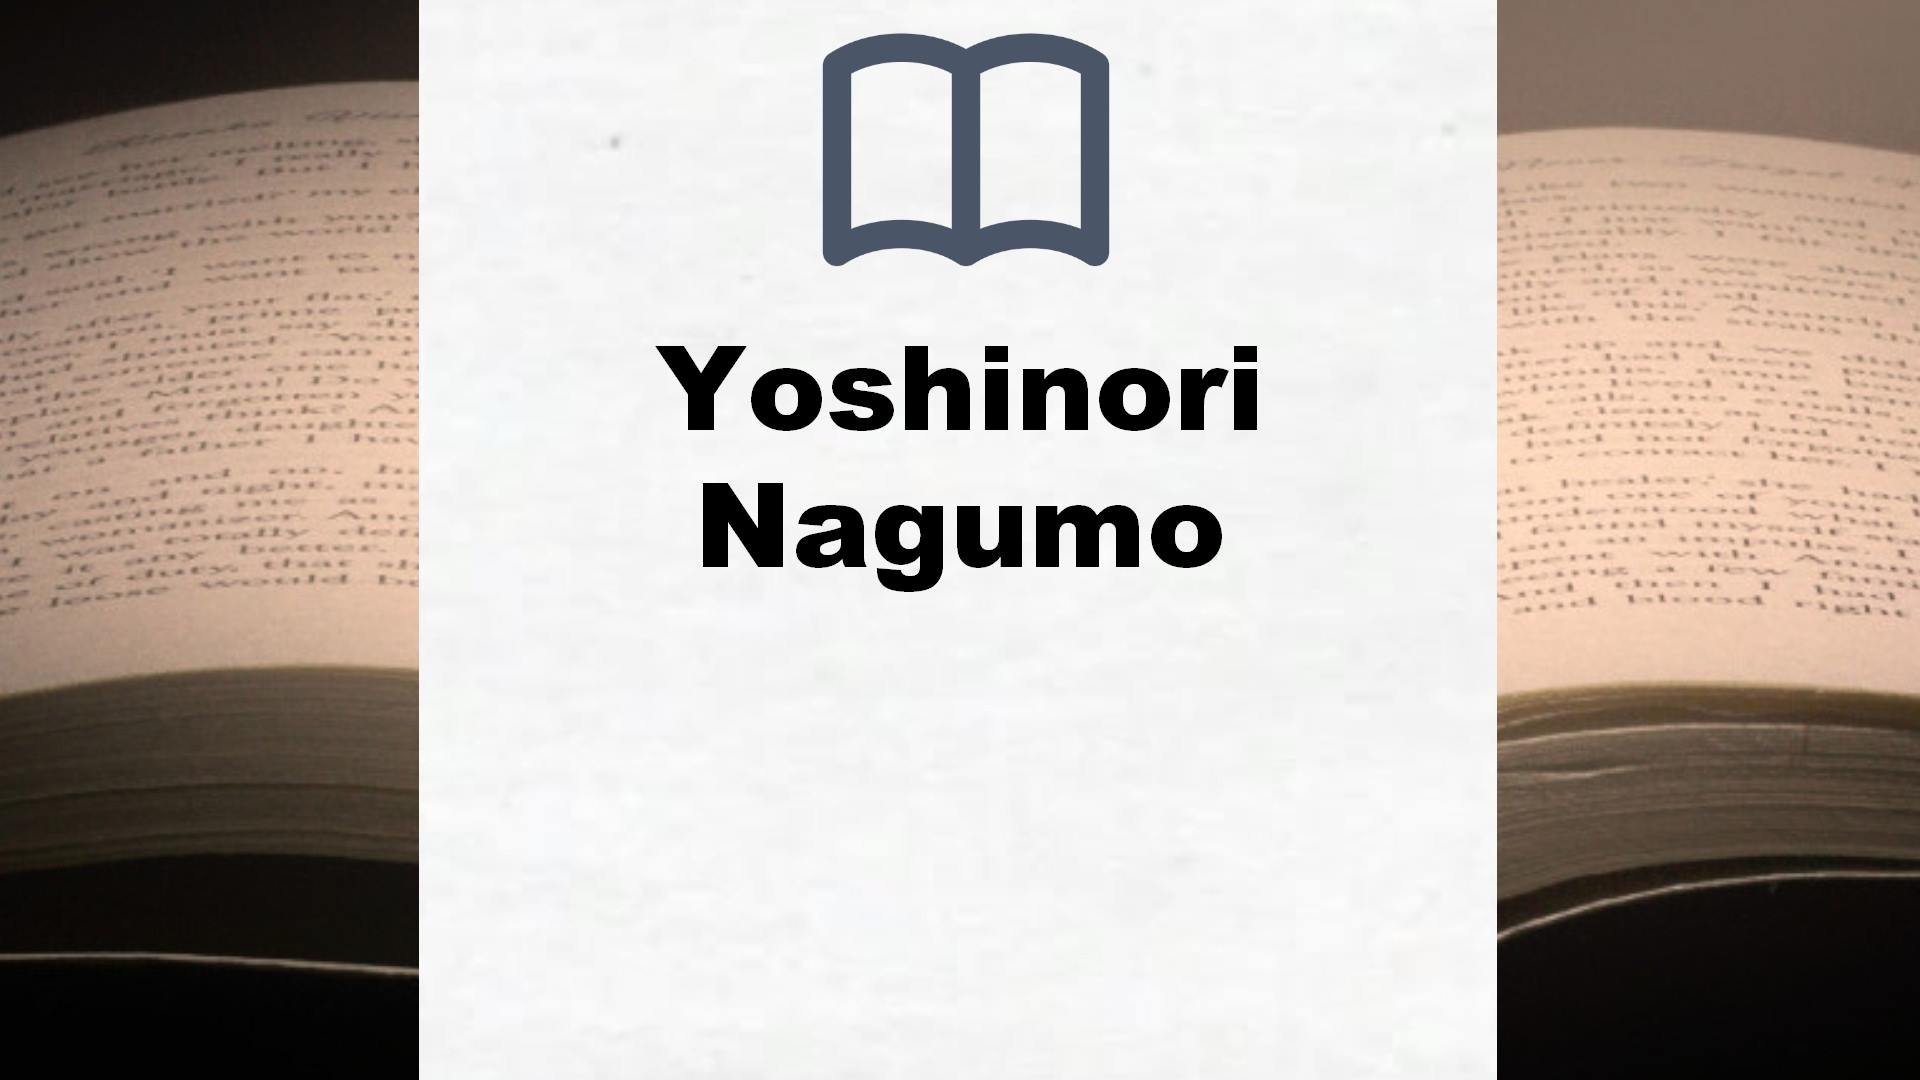 Libros Yoshinori Nagumo